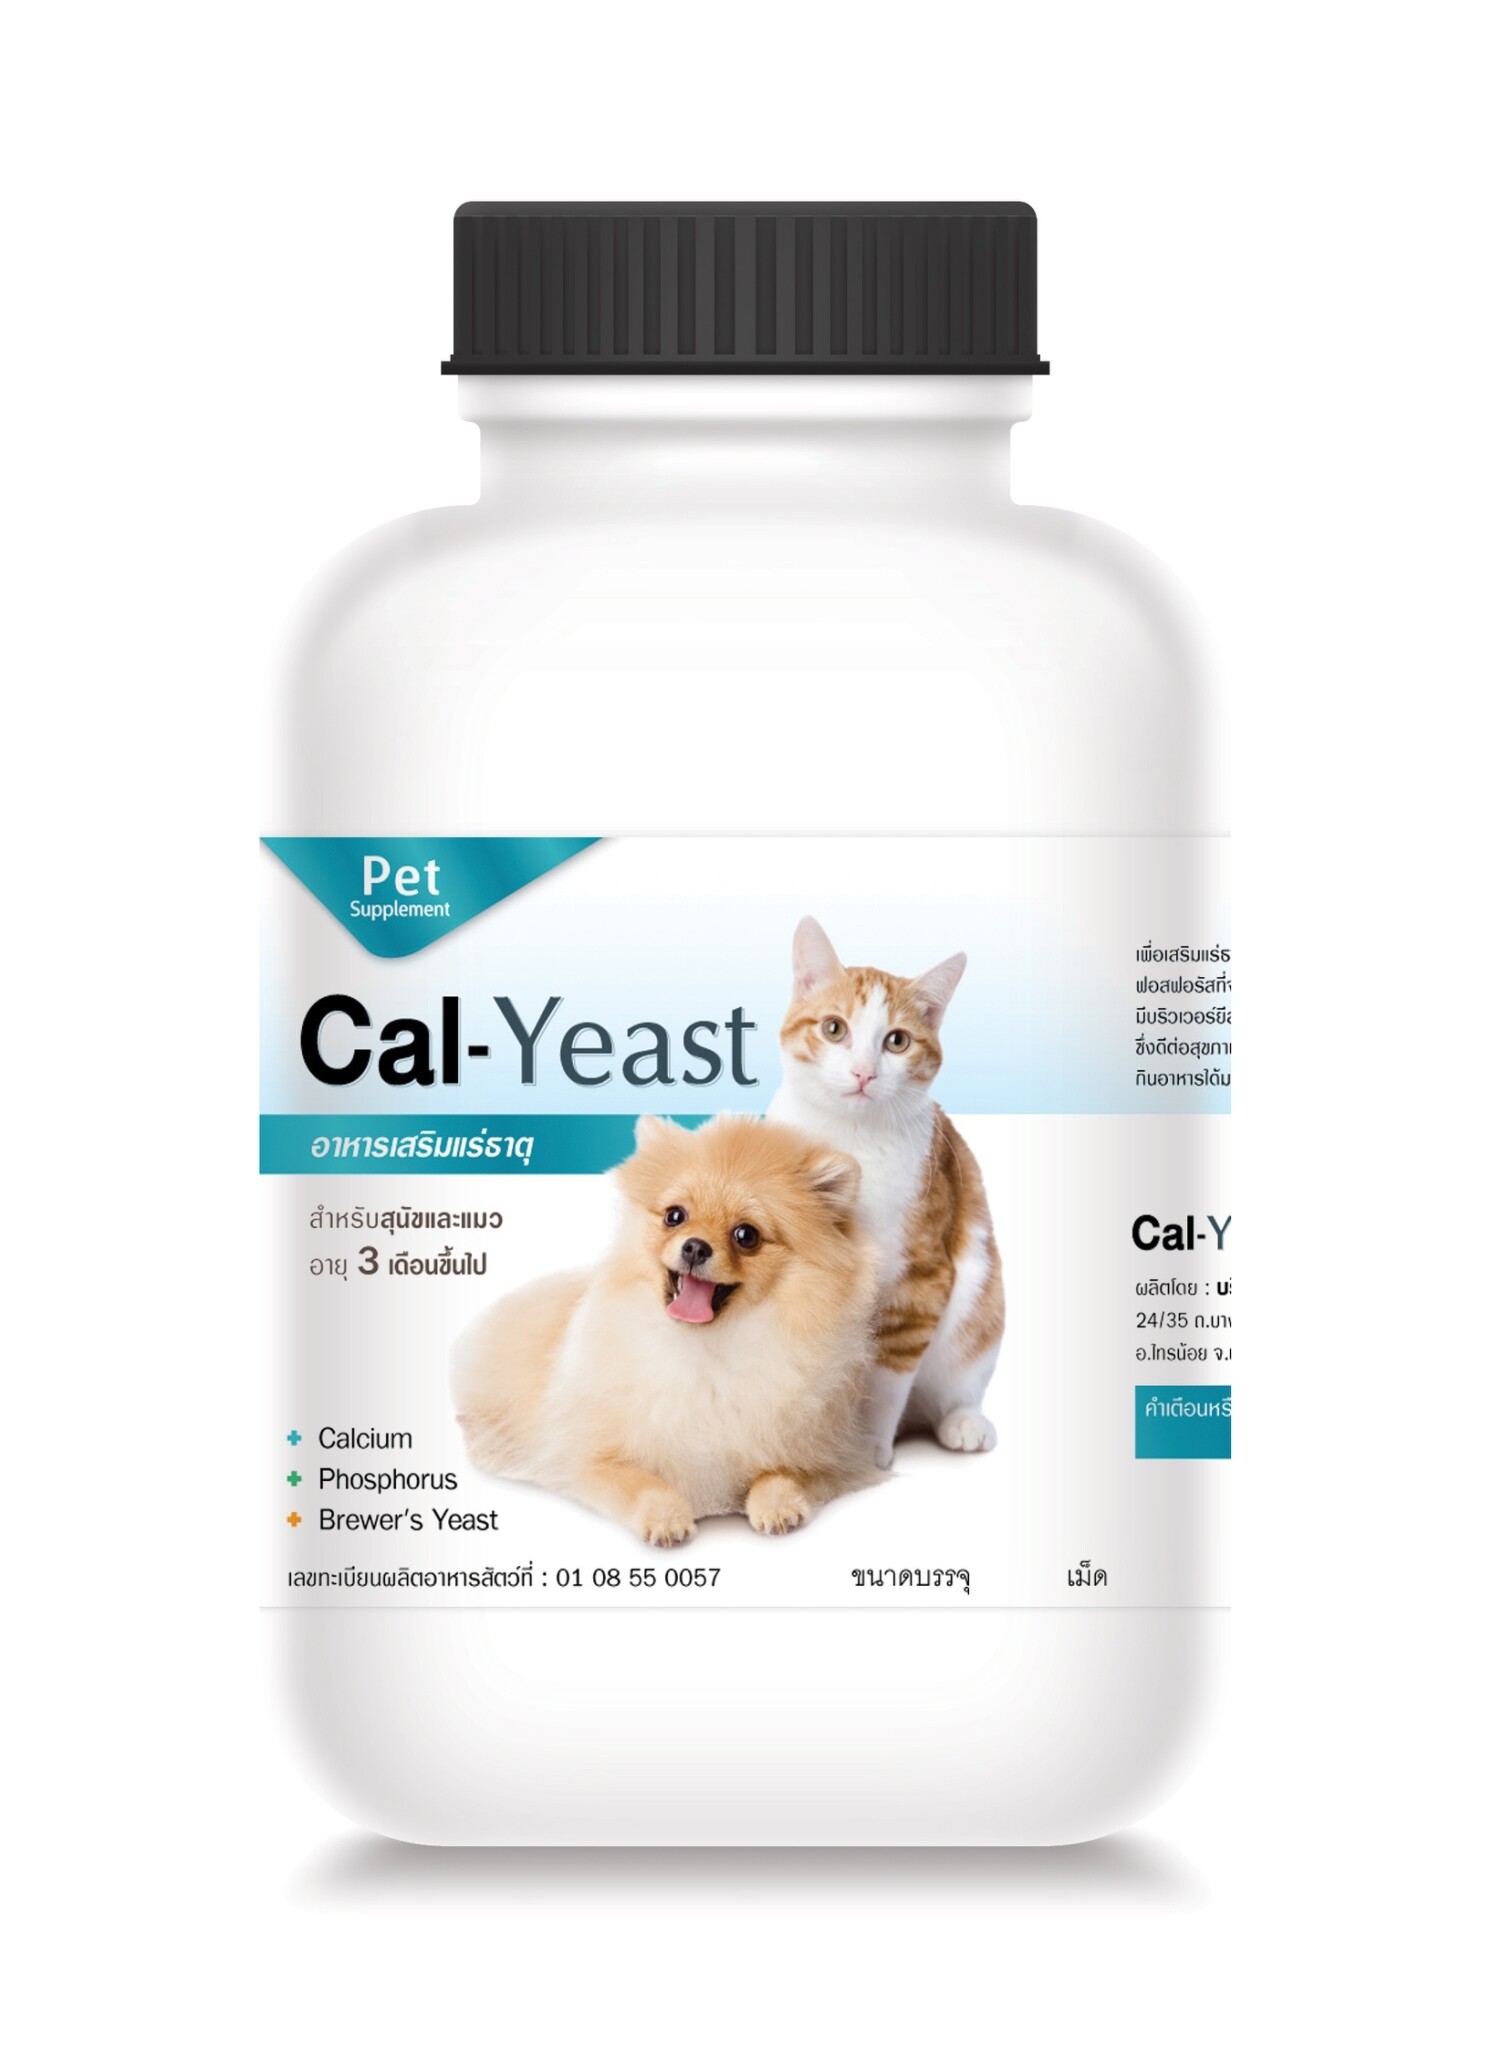 [บรรจุ 380 เม็ดจำนวน 1 ขวด]Cal-Yeast อาหารเสริม วิตามิน แคลเซี่ยม บำรุงกระดูก บำรุงกล้ามเนื้อ รสชาติดี สุนัขชอบ